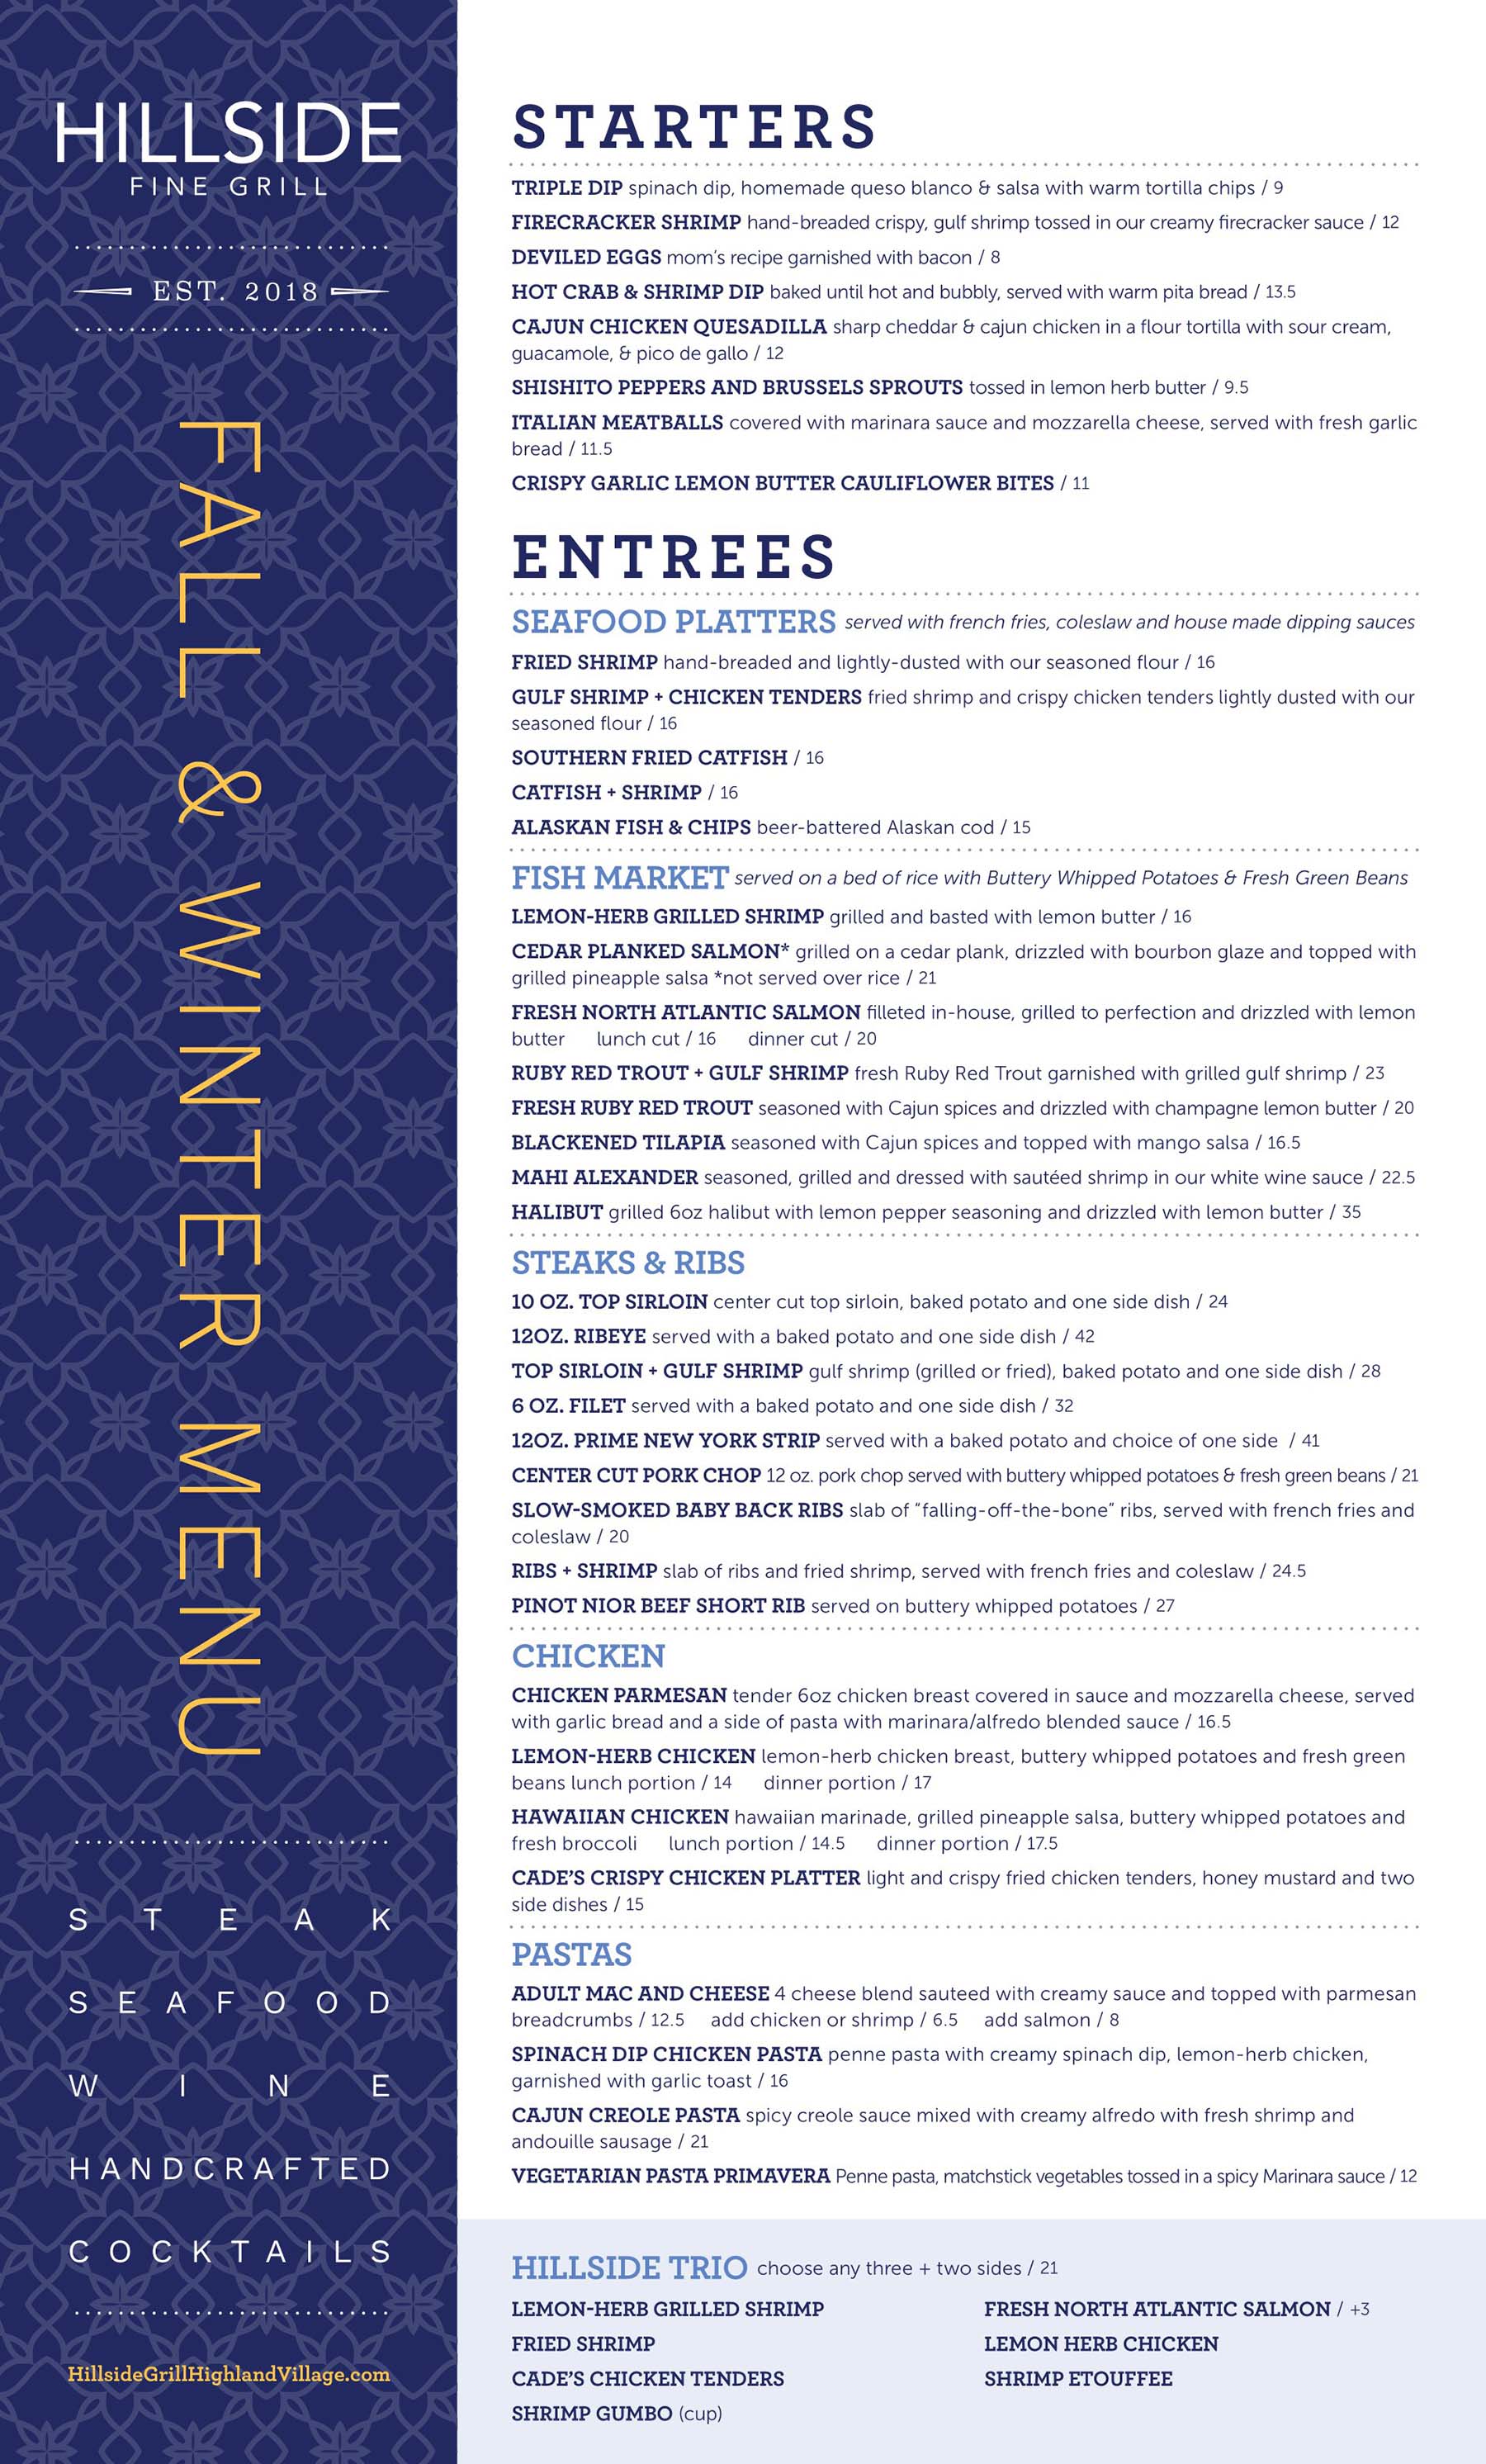 Hillside Fine Grill starters and entrée menu